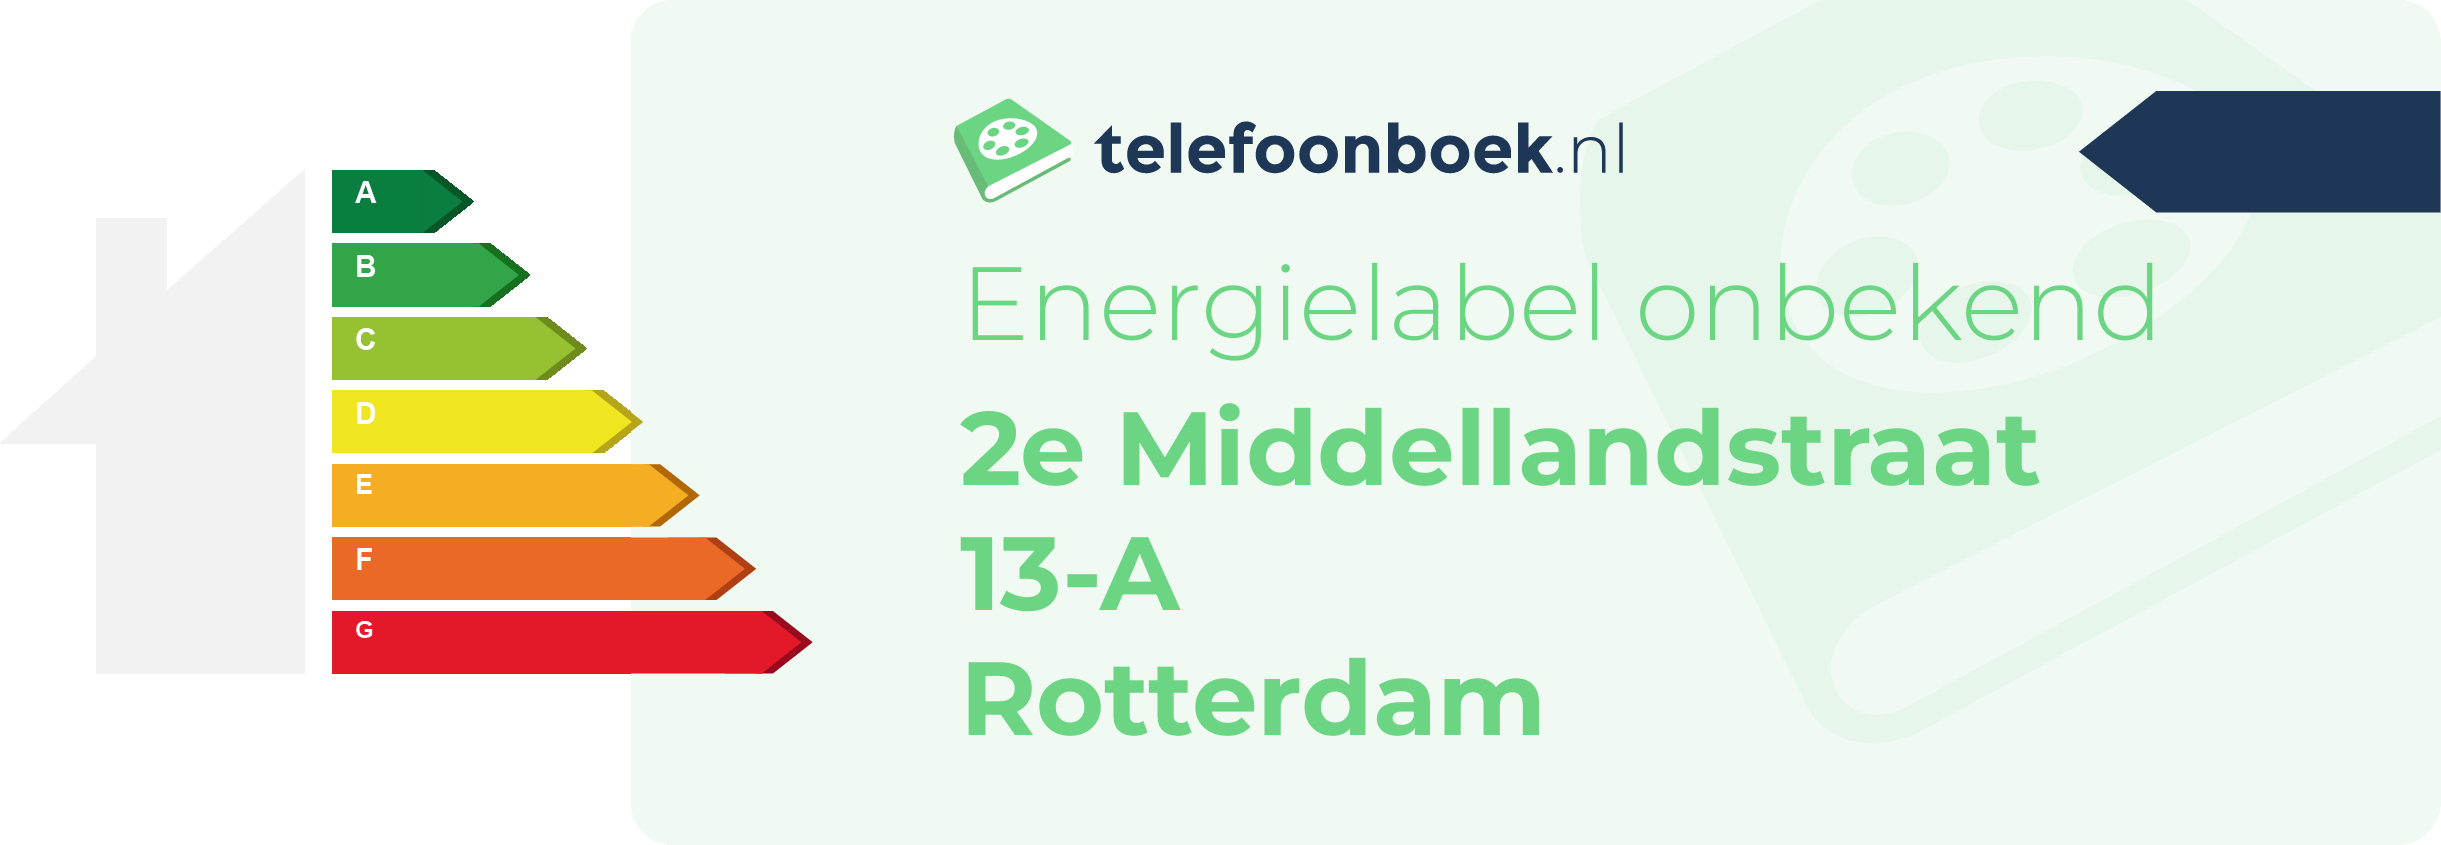 Energielabel 2e Middellandstraat 13-A Rotterdam